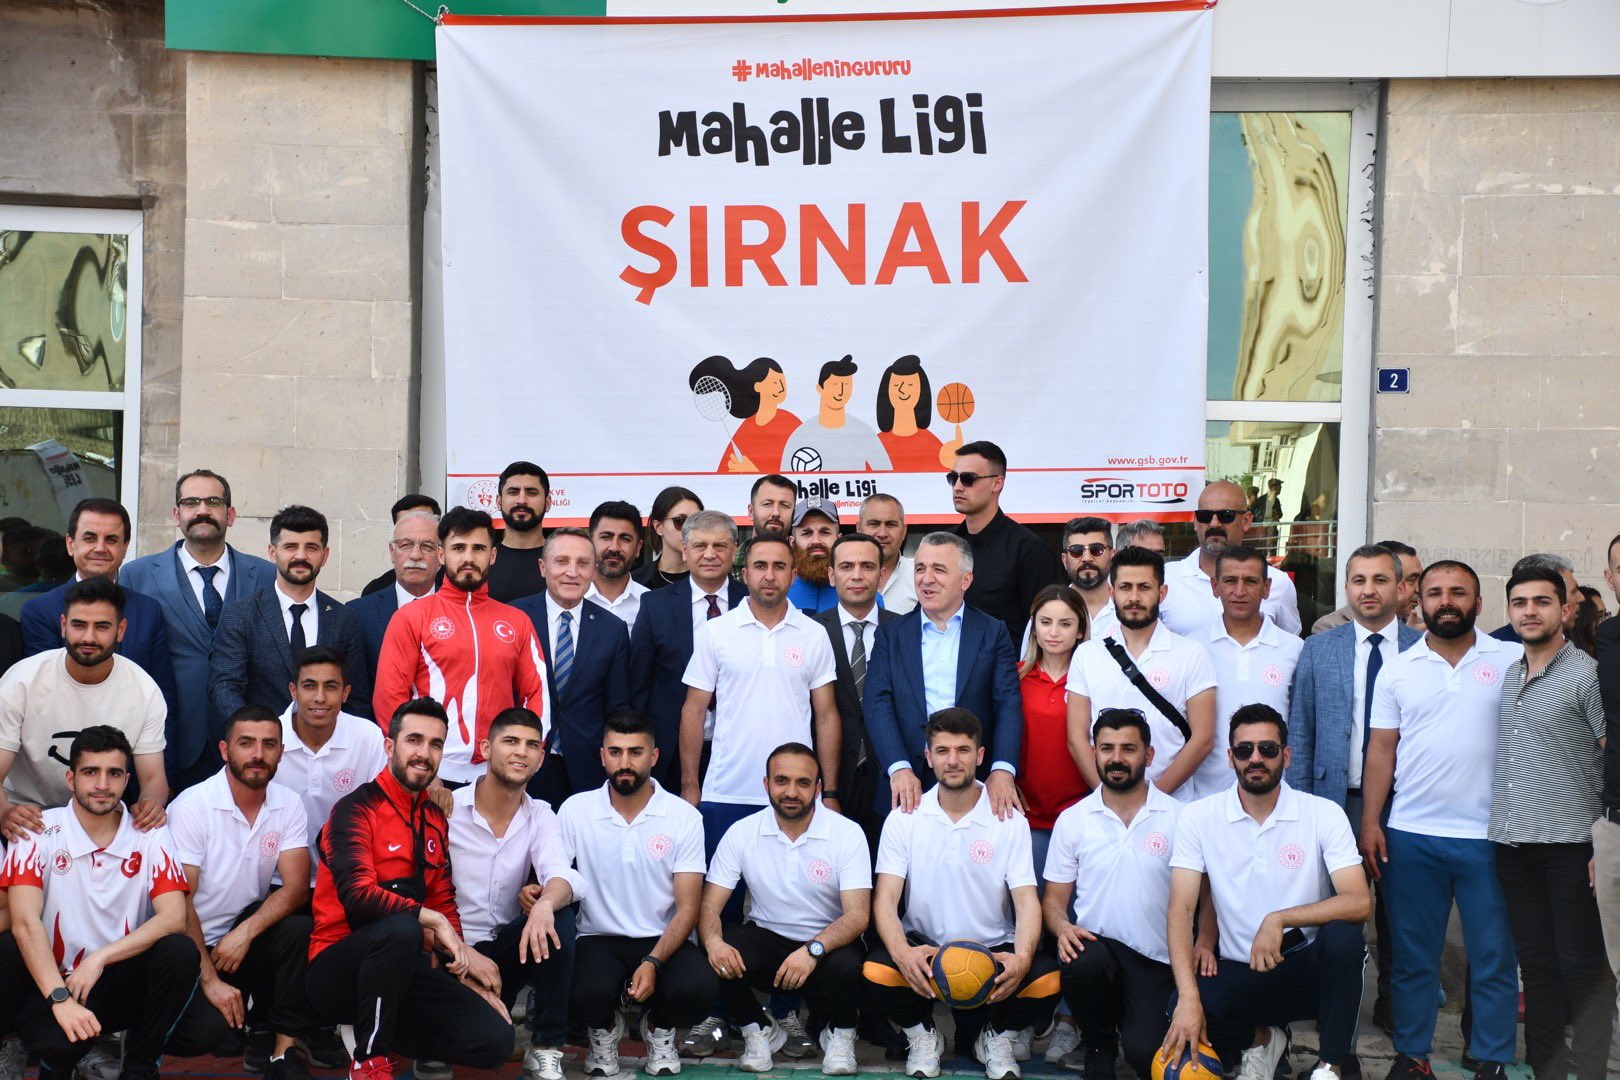 Silopi'de 300 Sporcunun Katılımıyla  "Mahalle Ligi Turnuvası" Düzenlendi